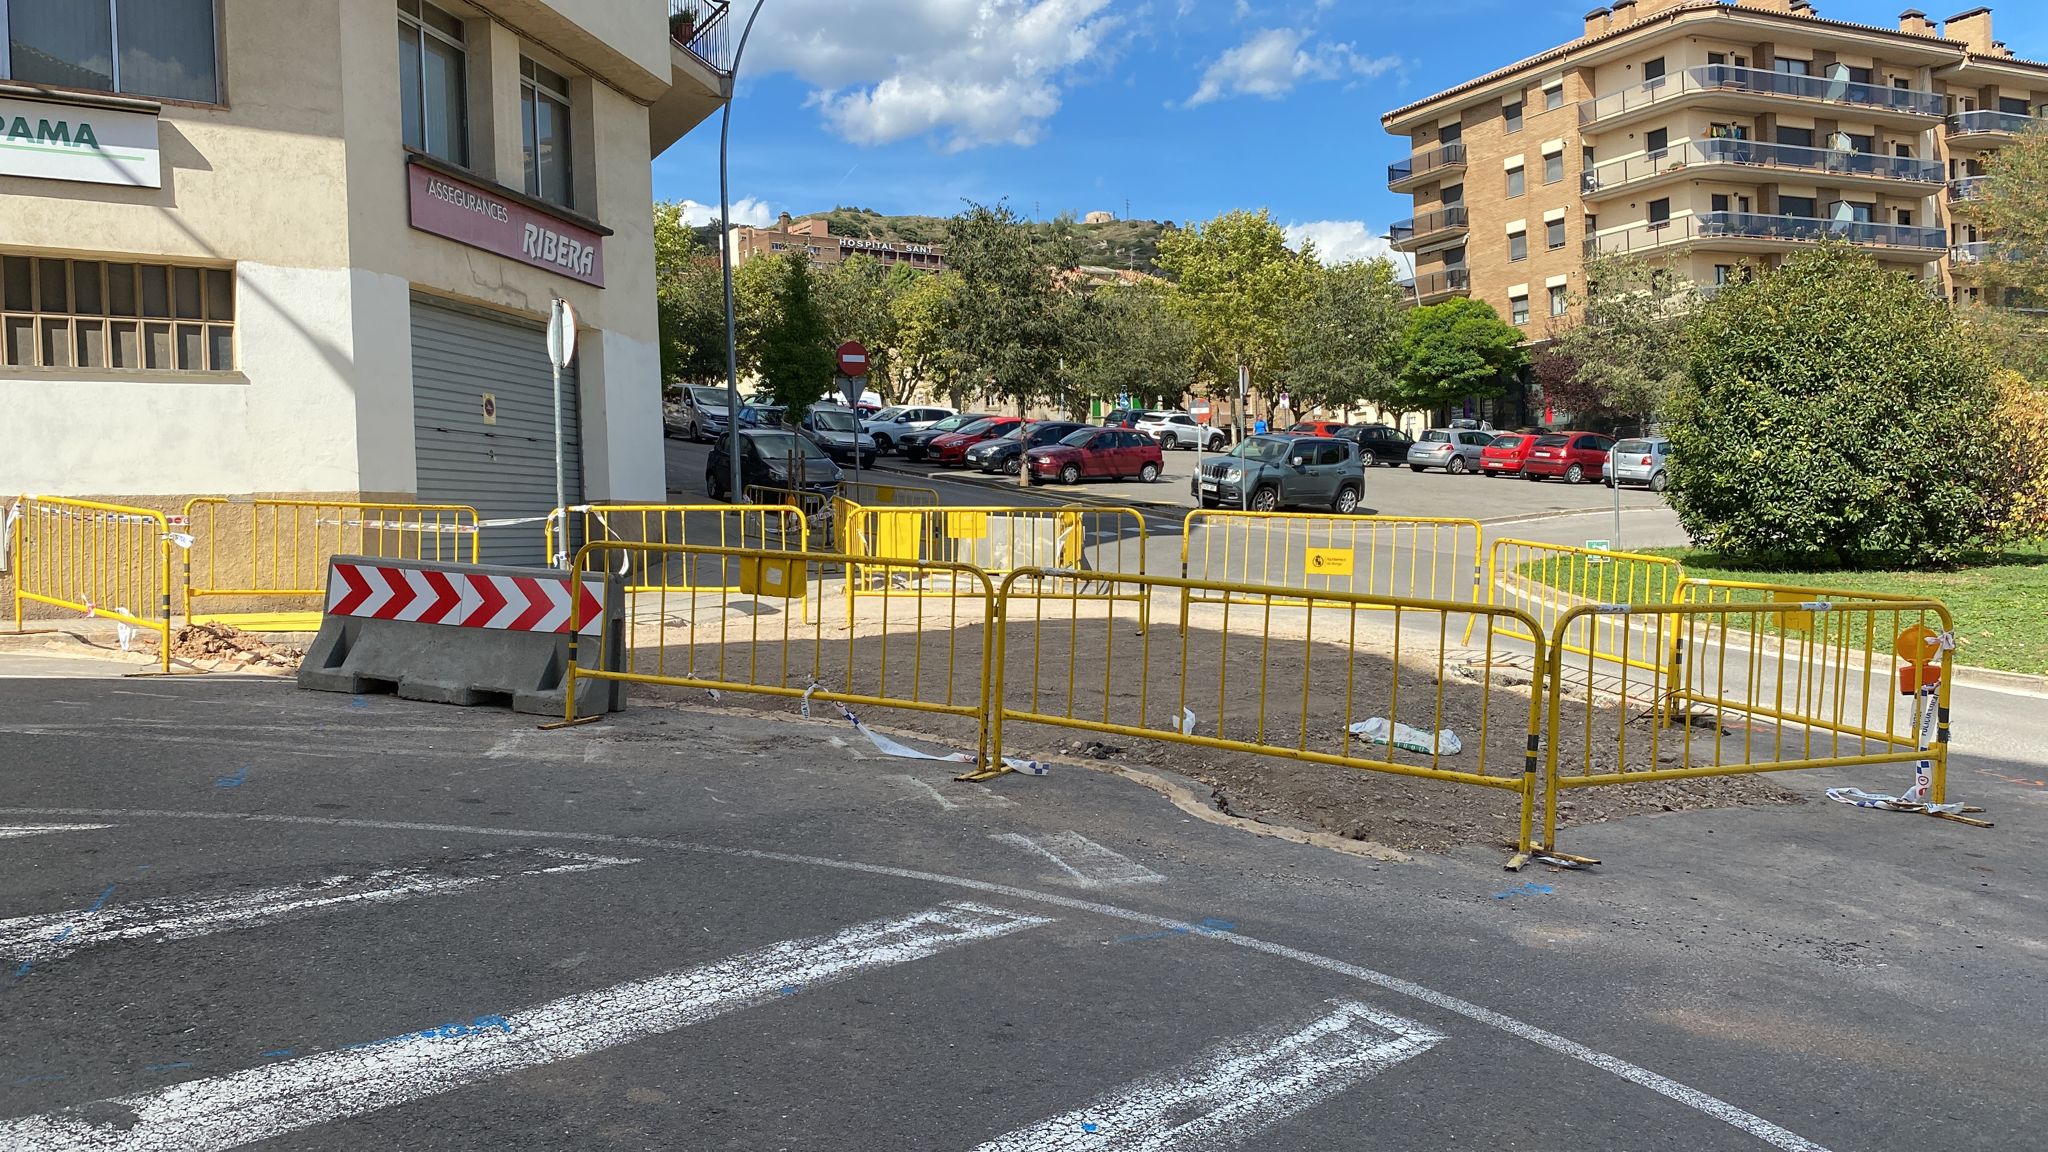 Afectacions de trànsit a partir del dilluns 12 de setembre provocades per obres d'emergència a la xarxa de sanejament entre el carrer Gran Via i l'avinguda del Canal Industrial